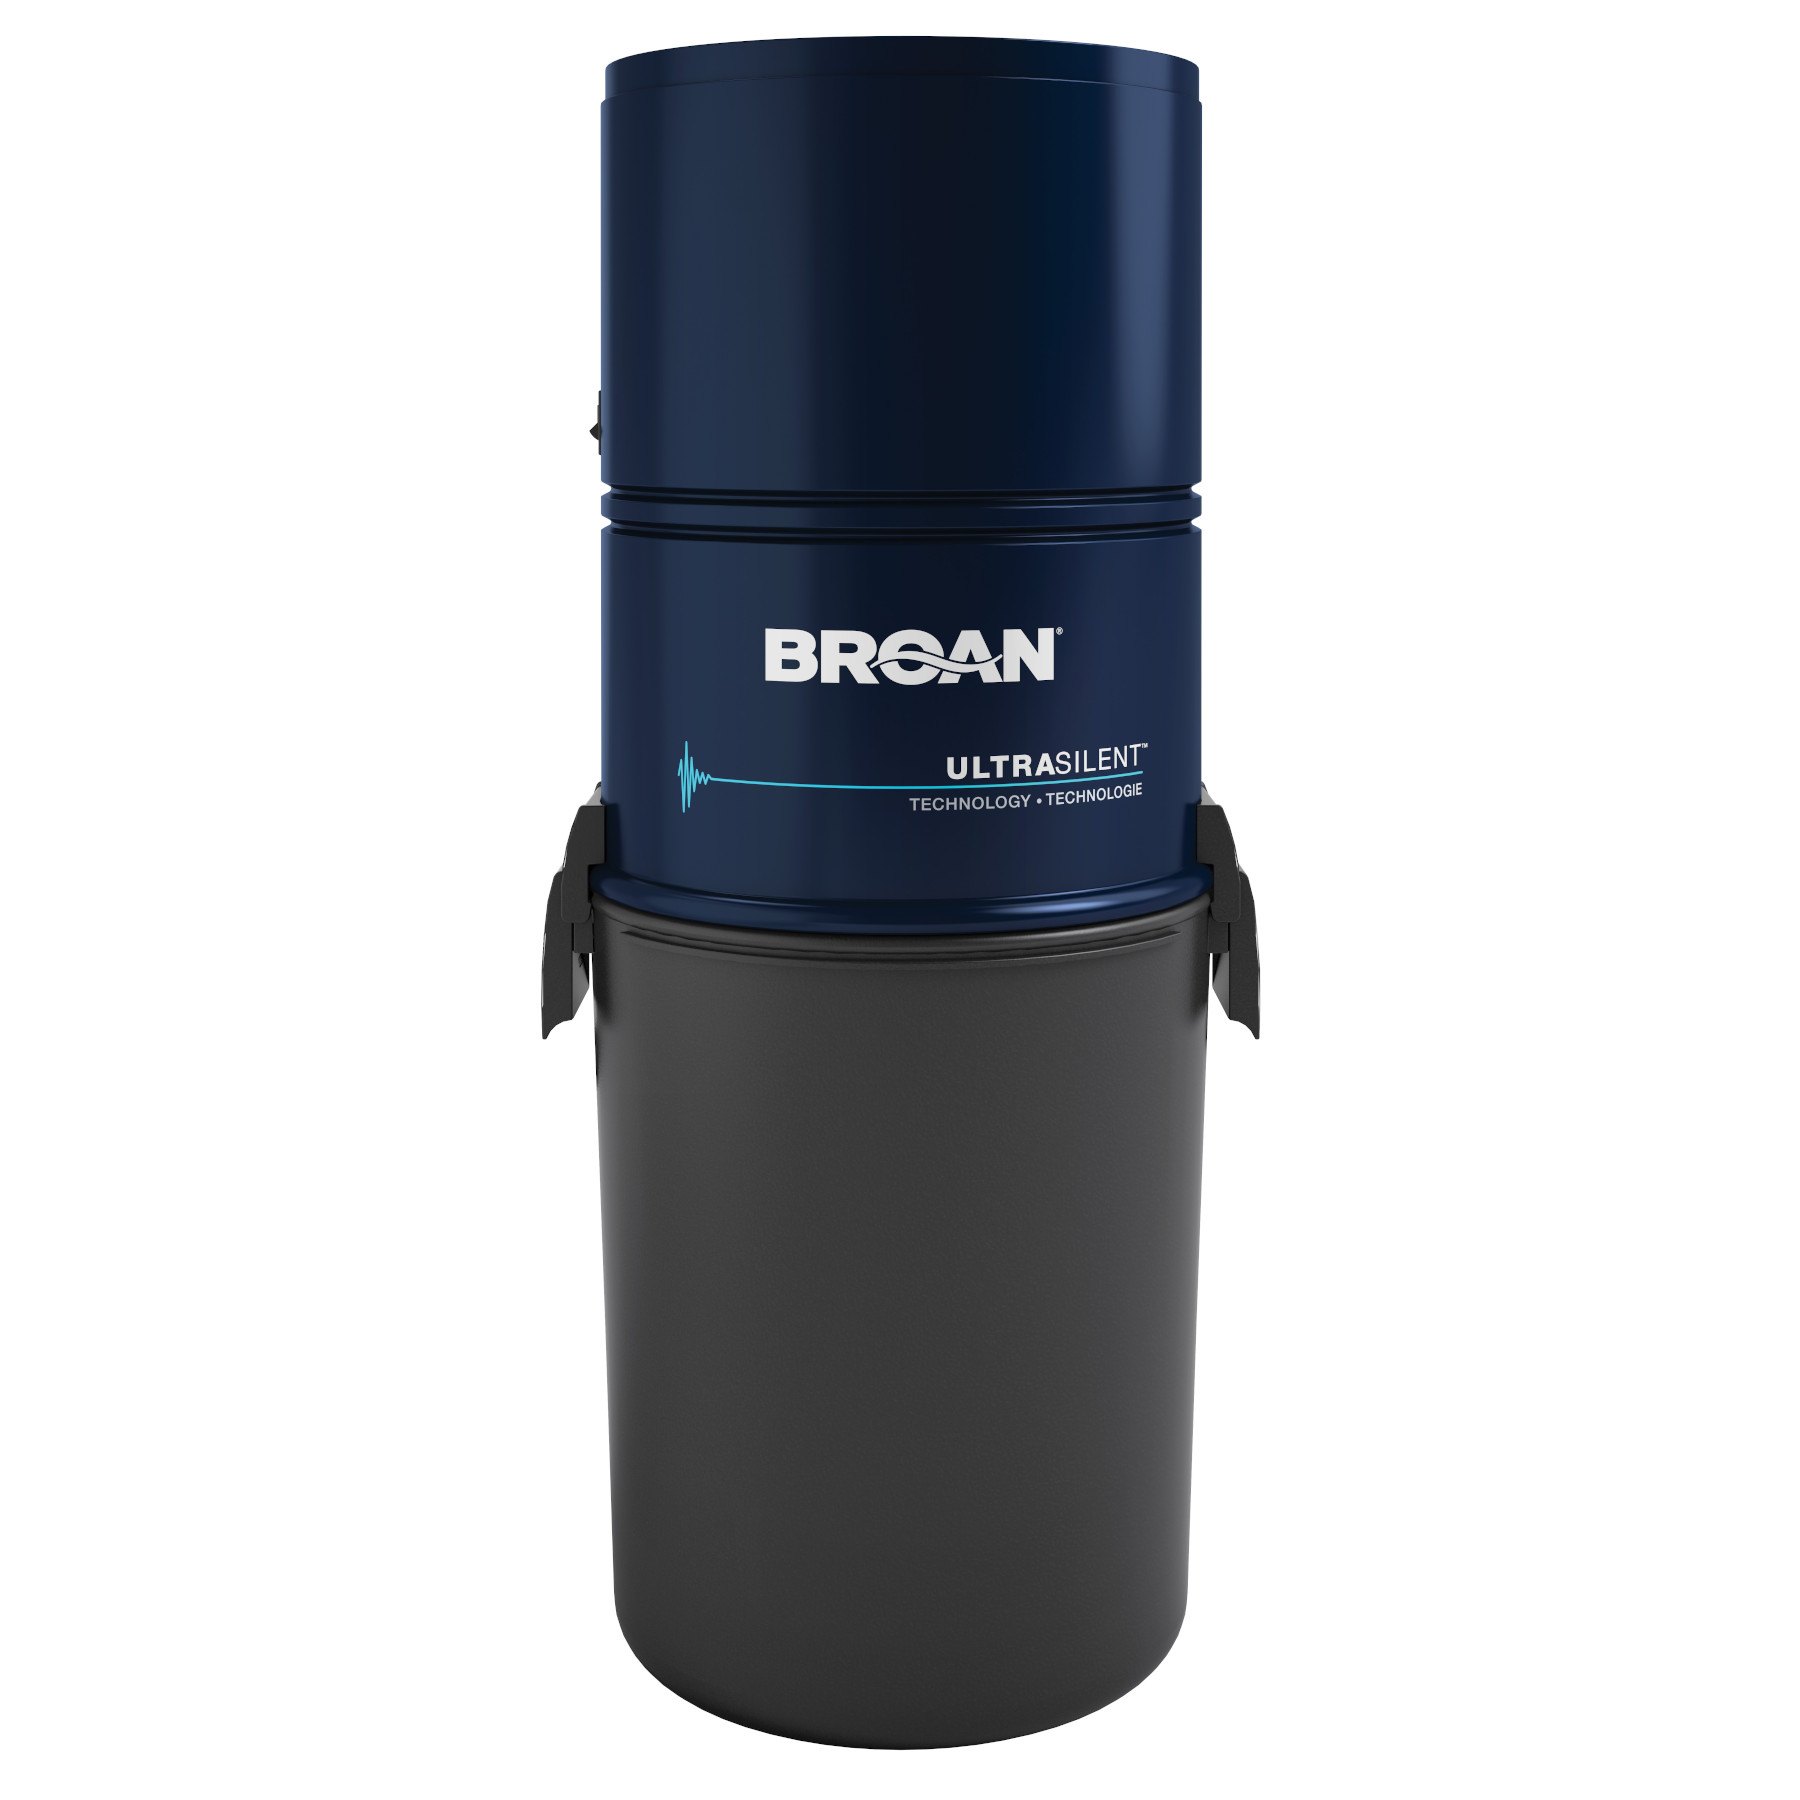 Broan® 550 Air Watt Central Vacuum